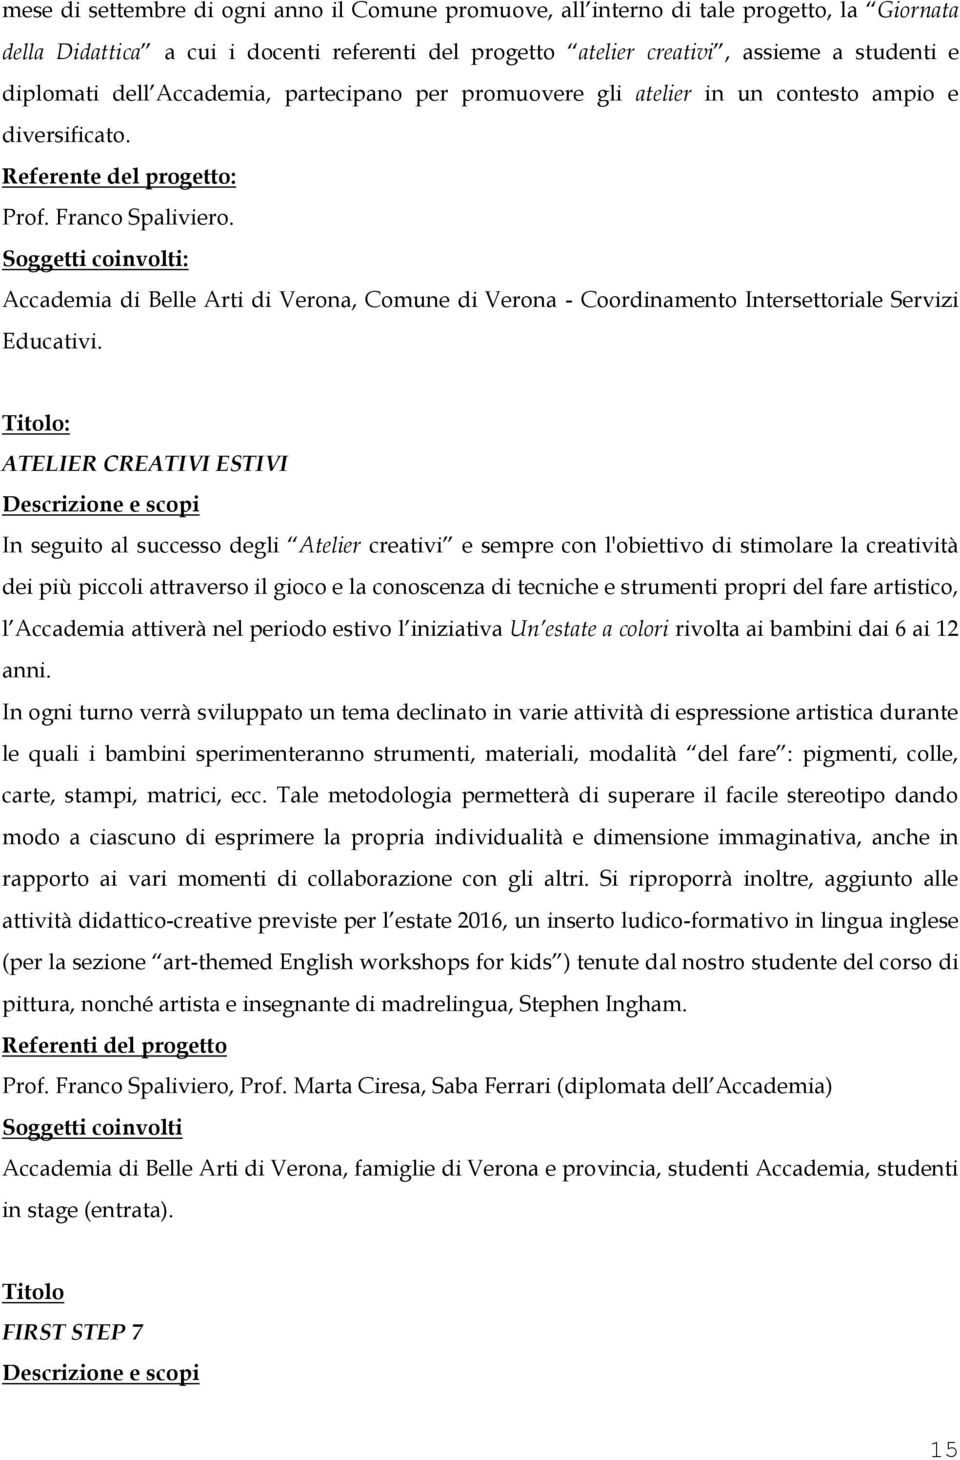 Accademia di Belle Arti di Verona, Comune di Verona - Coordinamento Intersettoriale Servizi Educativi.